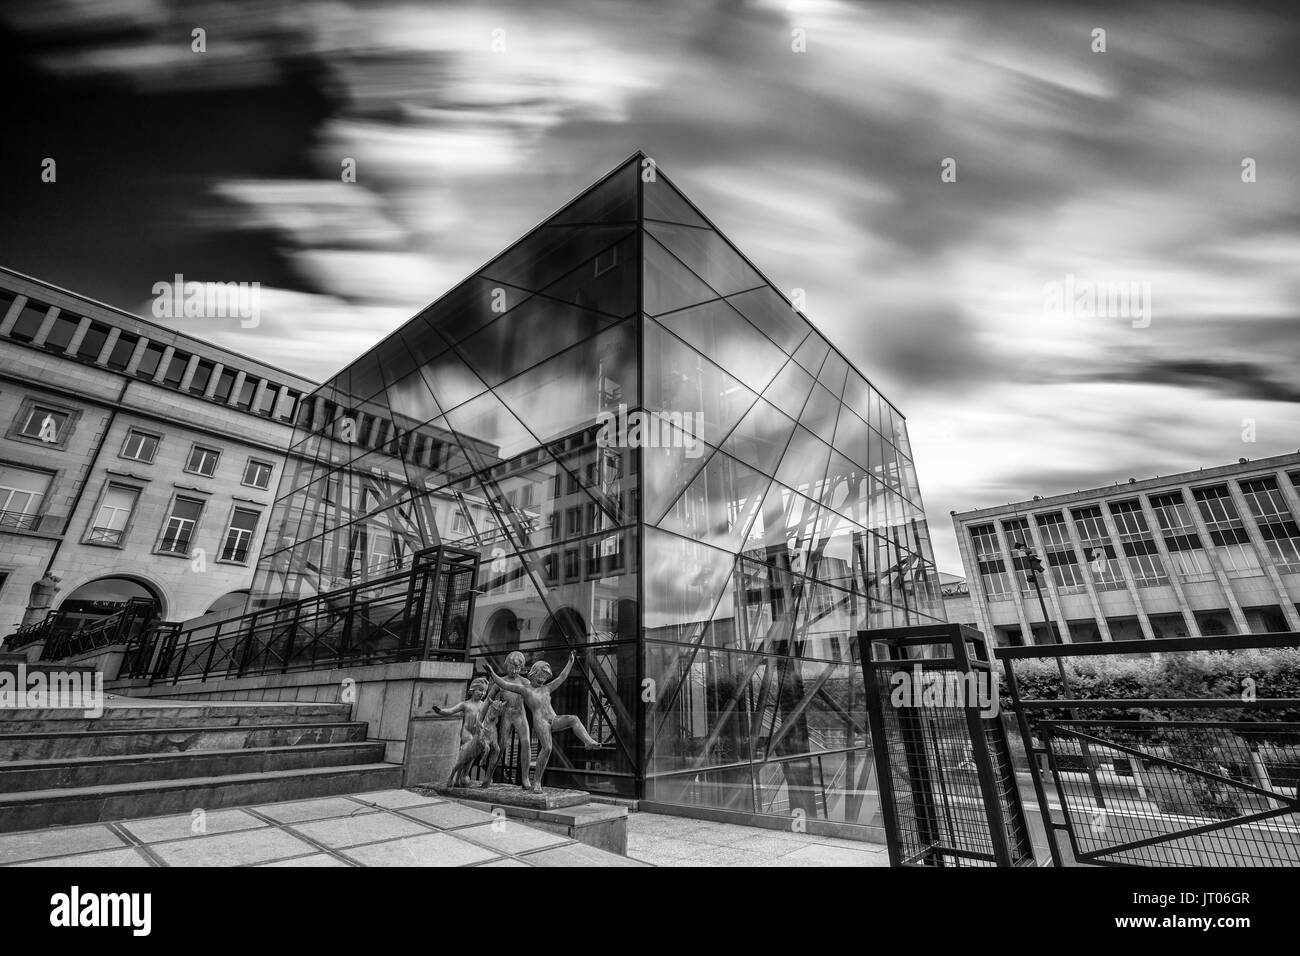 Bruxelles - le 25 juin 2017 - bâtiment moderne de Square Brussels Meeting Centre dans le quartier historique (Kunstberg) Mont des Arts de Bruxelles, Belgique Banque D'Images